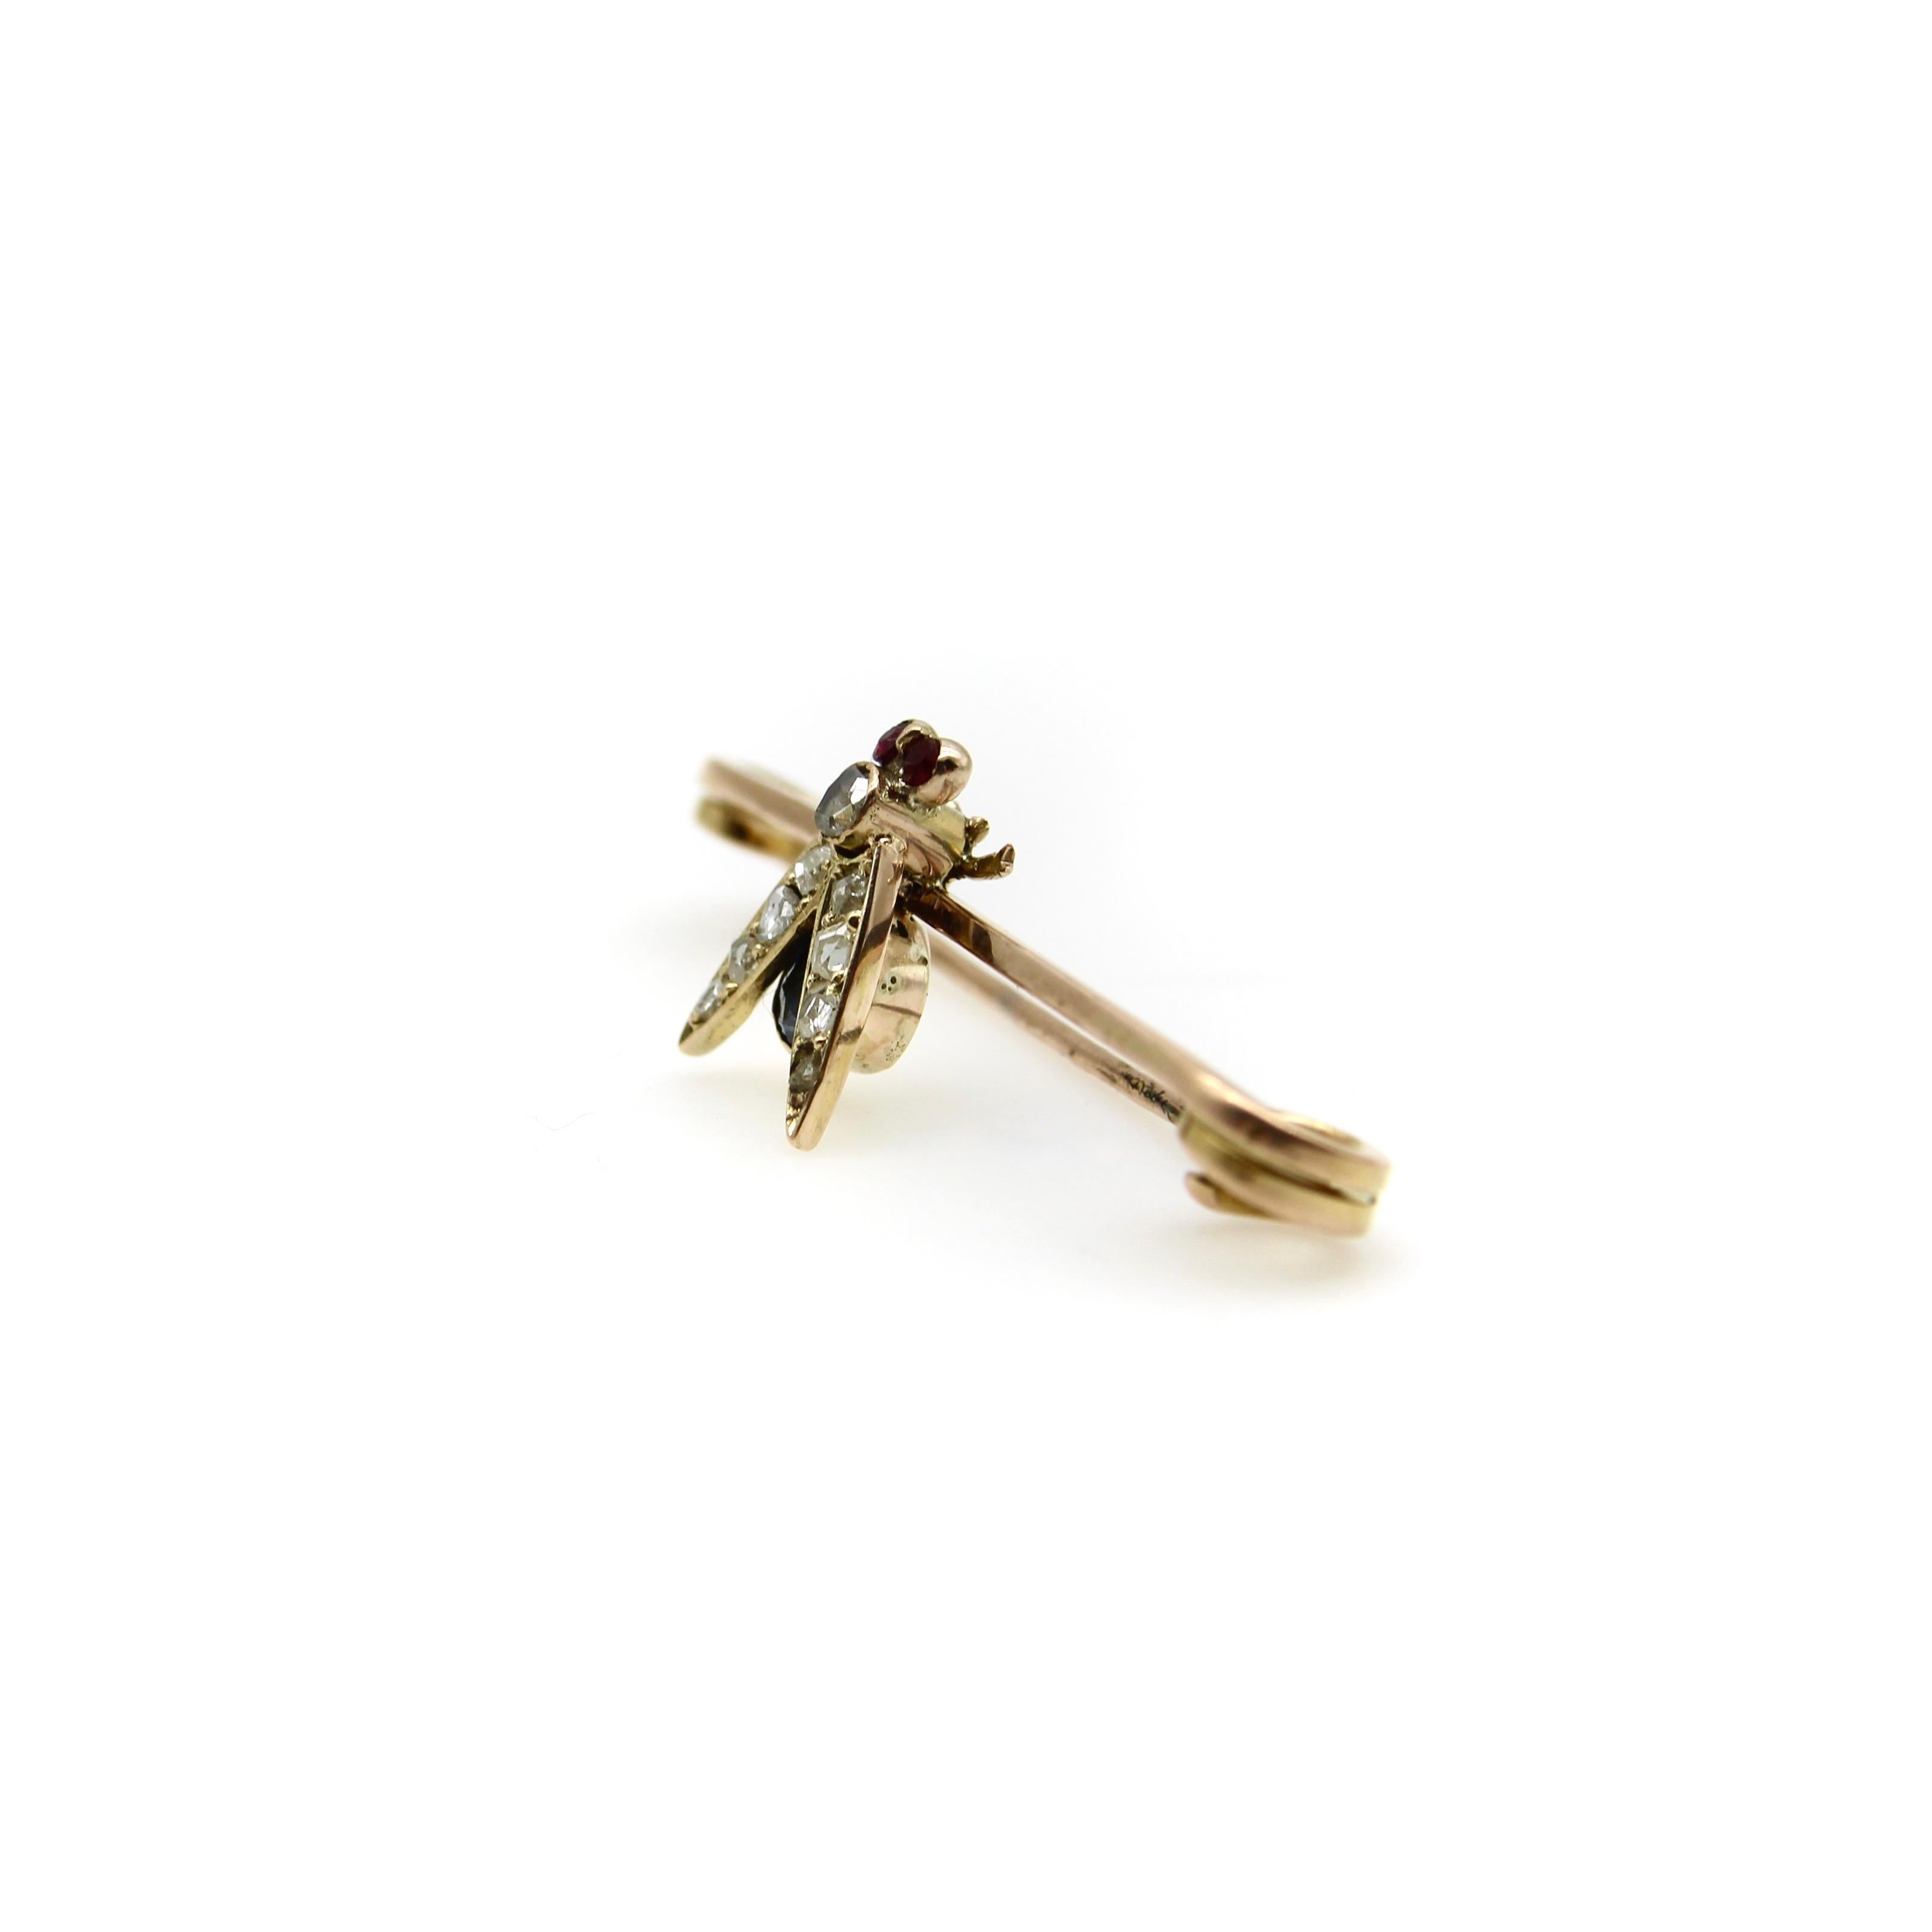 In der Mitte dieser Brosche aus 9-karätigem Gold sitzt eine wunderschöne, mit Edelsteinen besetzte viktorianische Fliege. Die Fliege hat rubinrote Augen, einen Rosenschliff-Diamanten als Brustkorb und acht Rosenschliff-Diamanten als Perlen in den